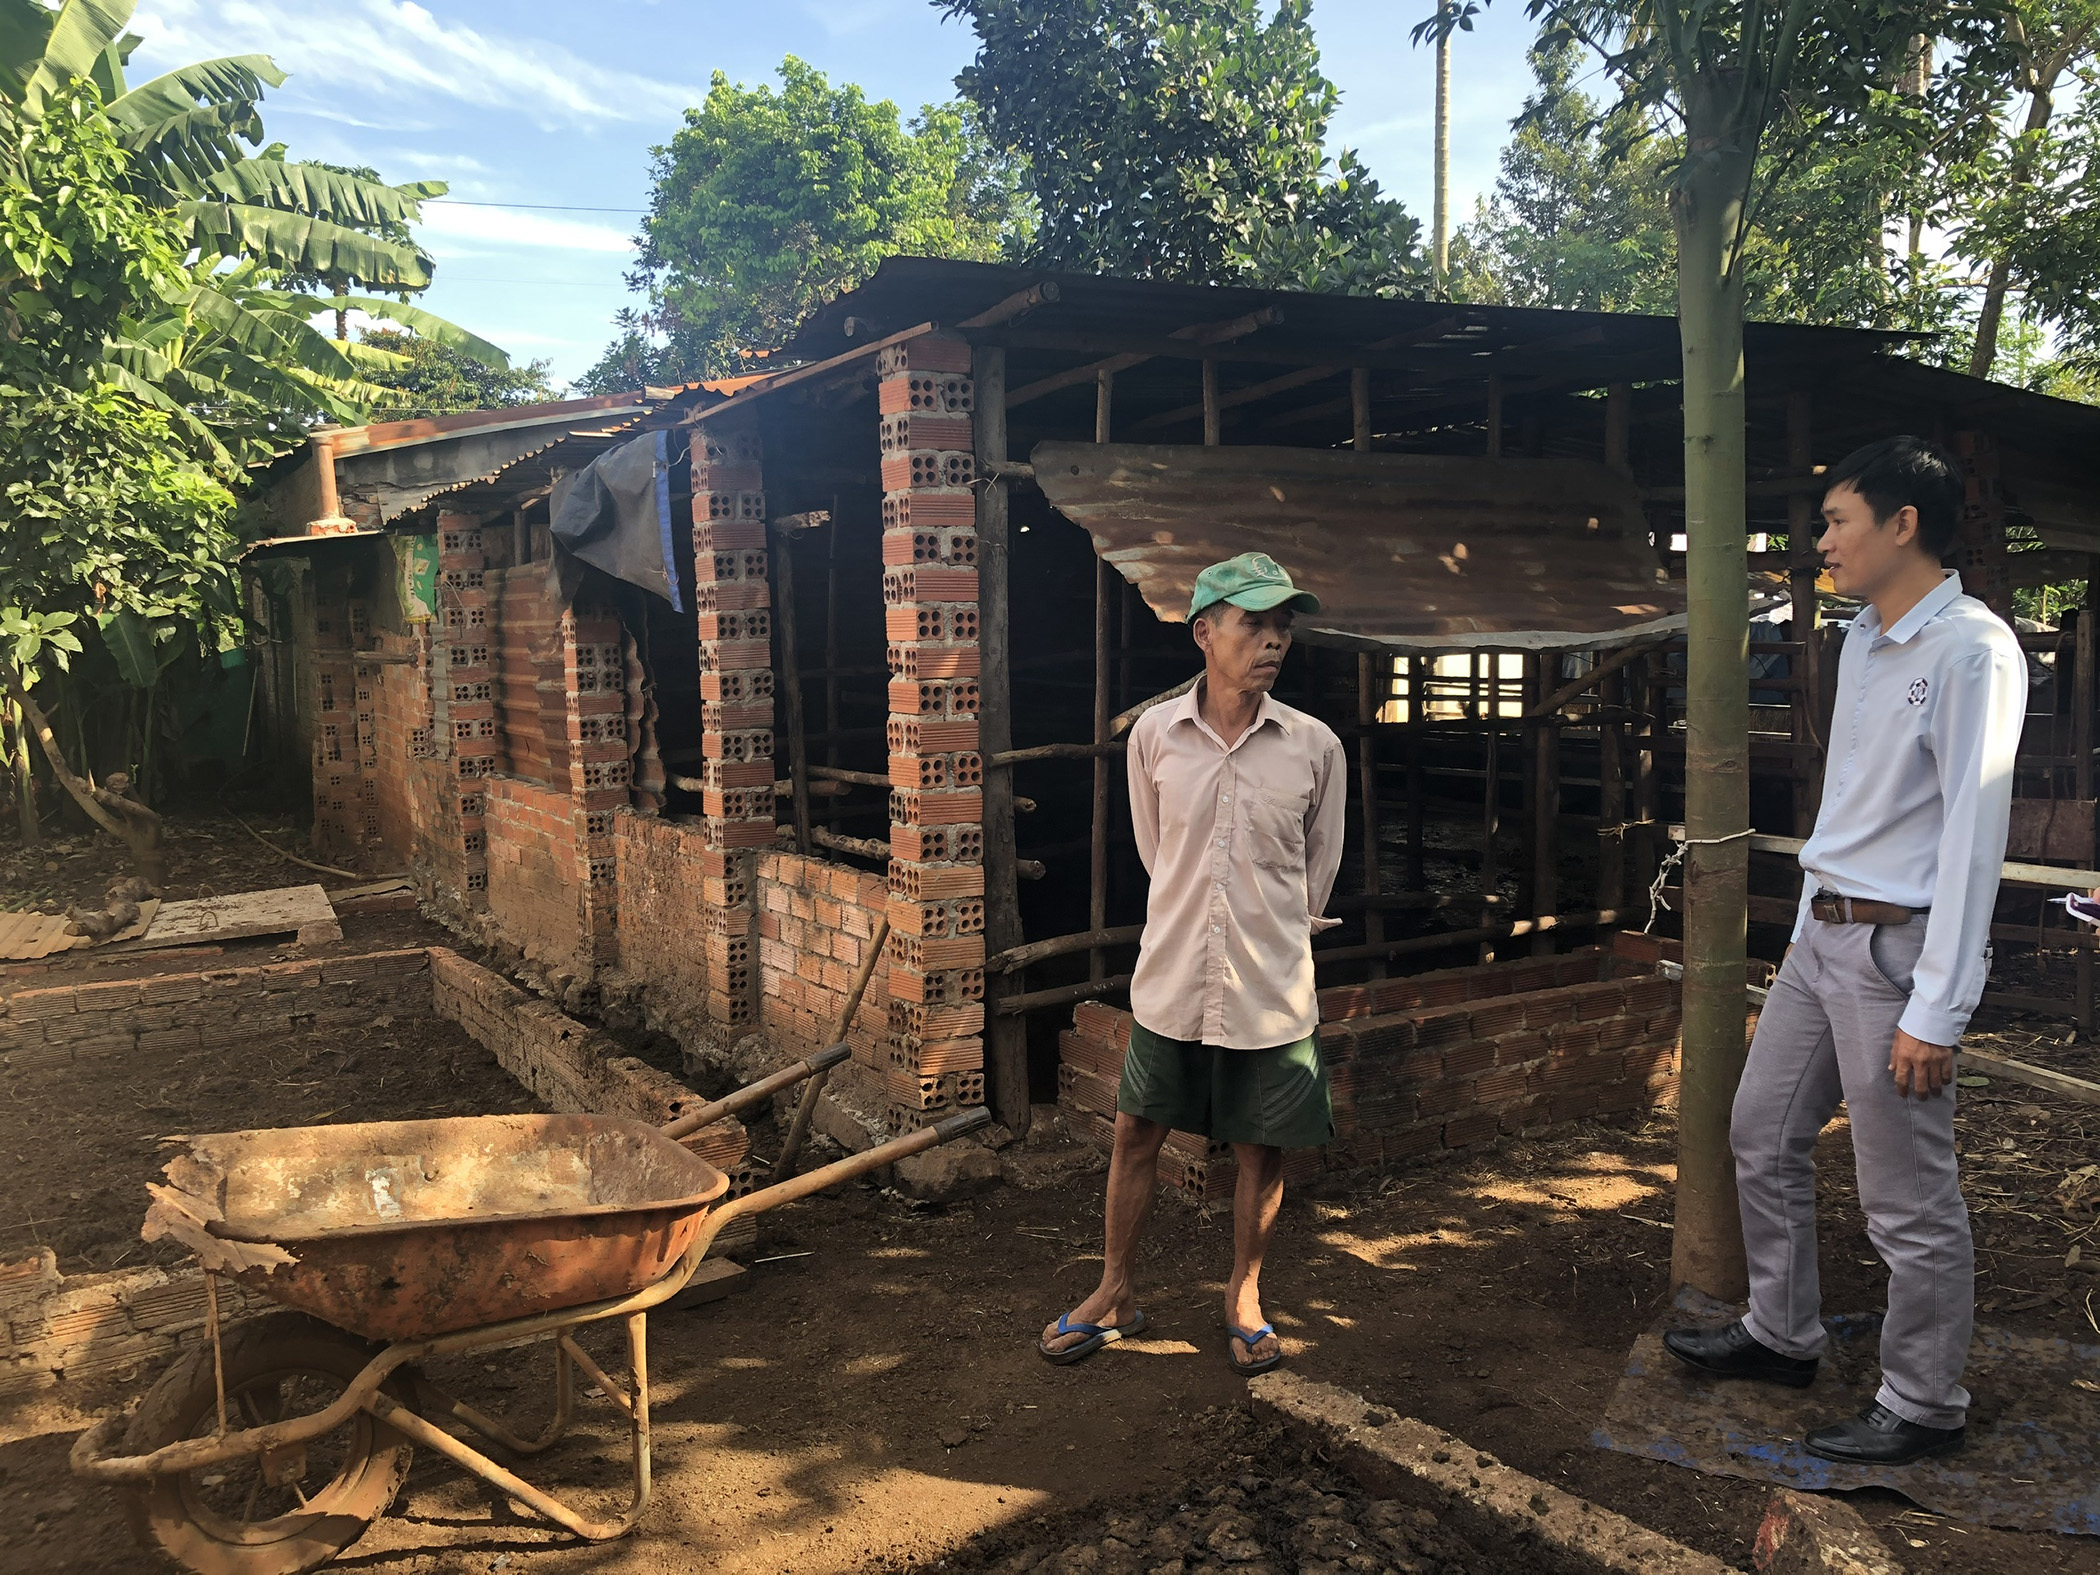 Chuồng bò của gia đình ông Trần Thanh Bình được thiết kế hở, không có hệ thống xử lý chất thải  nên gây mùi hôi, ảnh hưởng môi trường sống của người dân.